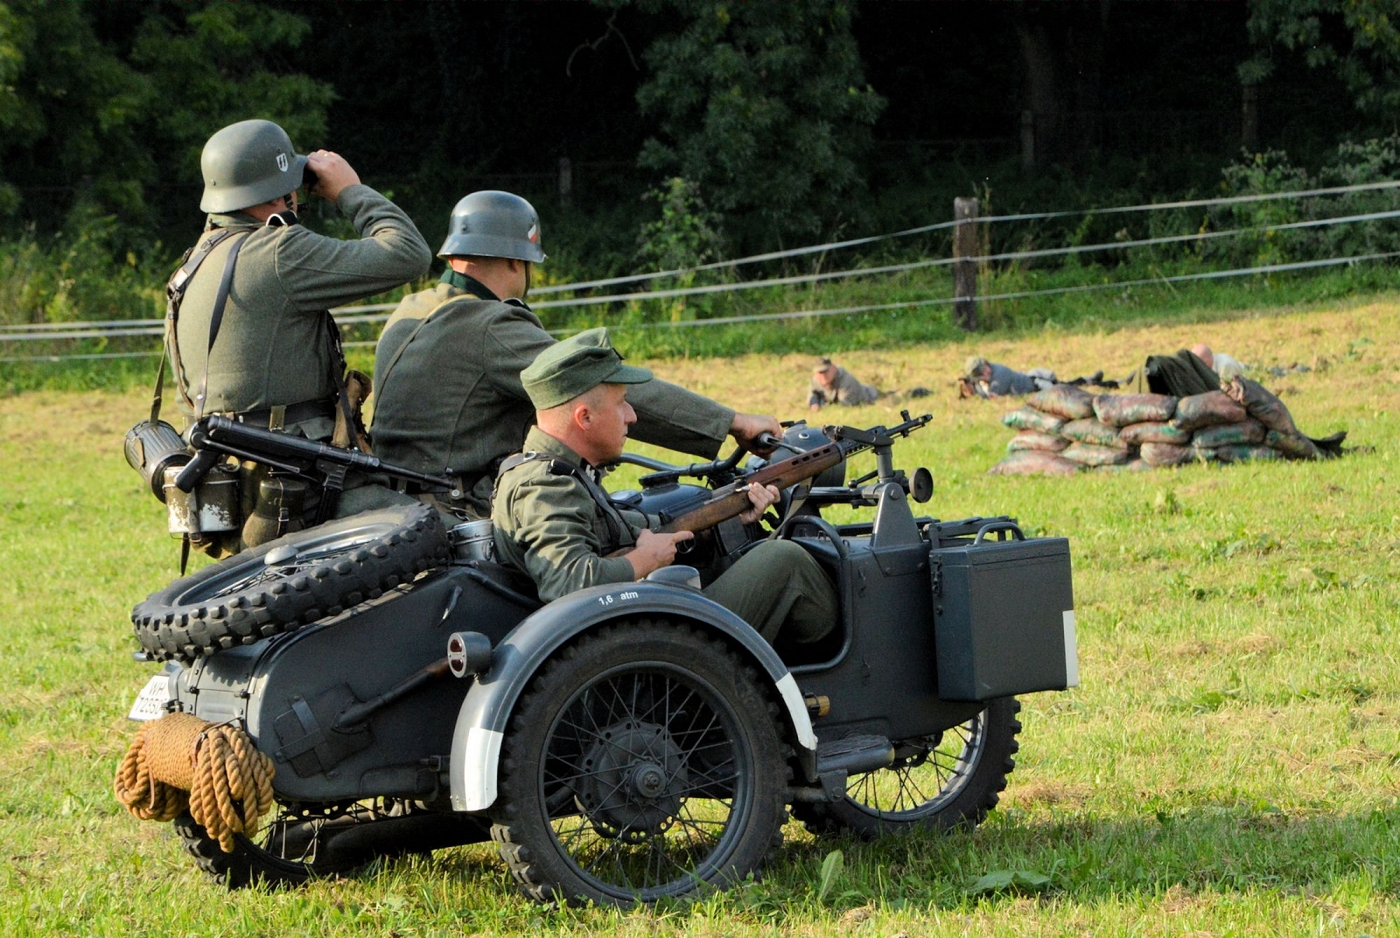 Motocykl wojskowy na nim trzech żołnierzy - jadą przez pole.